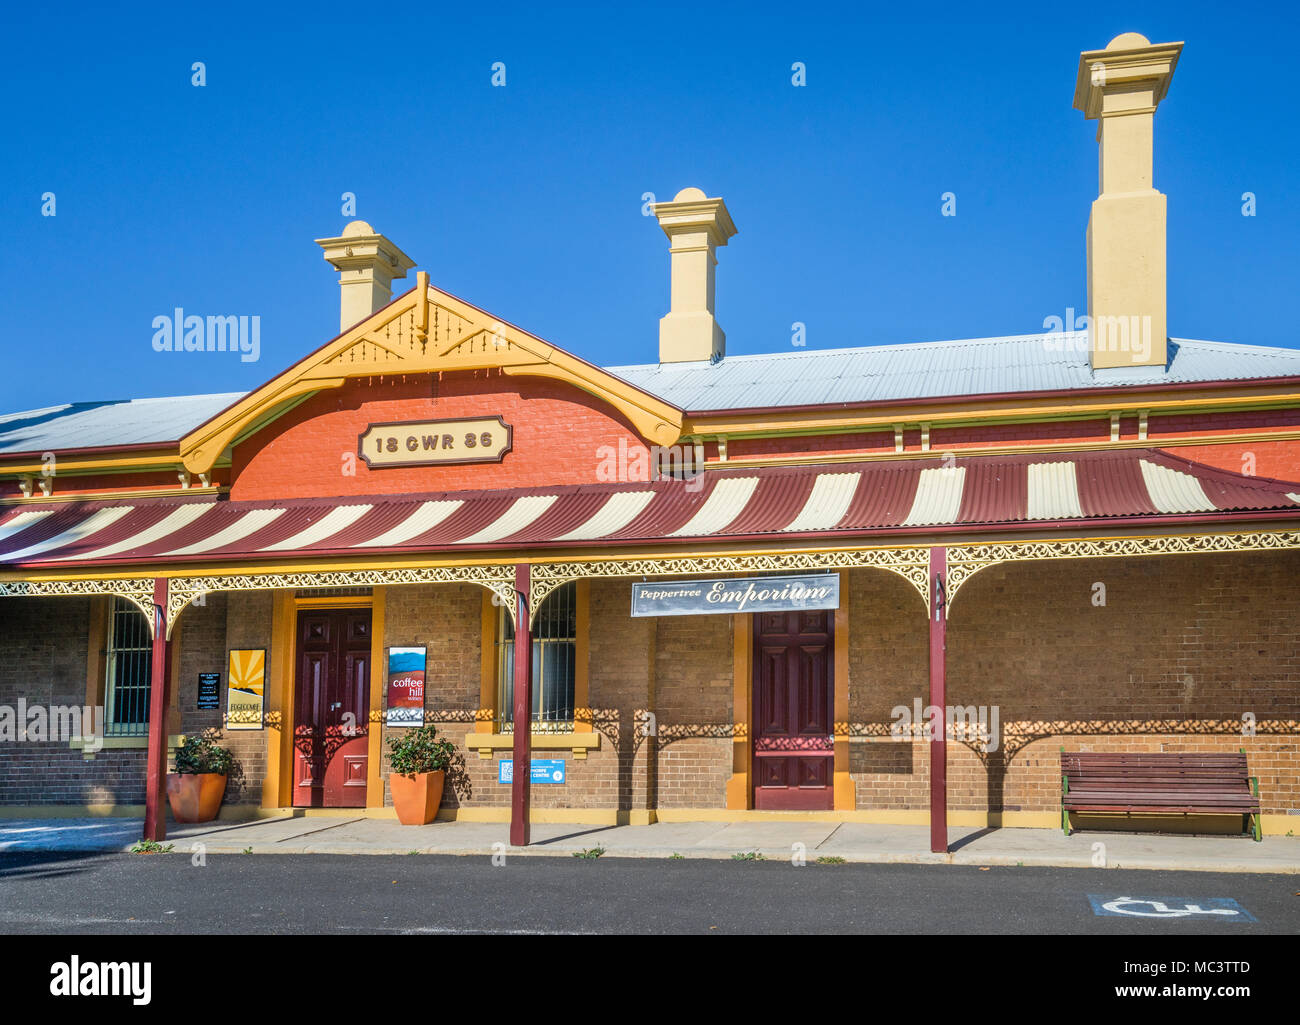 Historische Millthorpe Bahnhof mit Ihrer anmutigen Straße Veranda geöffnet 1886 Millthorpe, Central West New South Wales, Australien Stockfoto